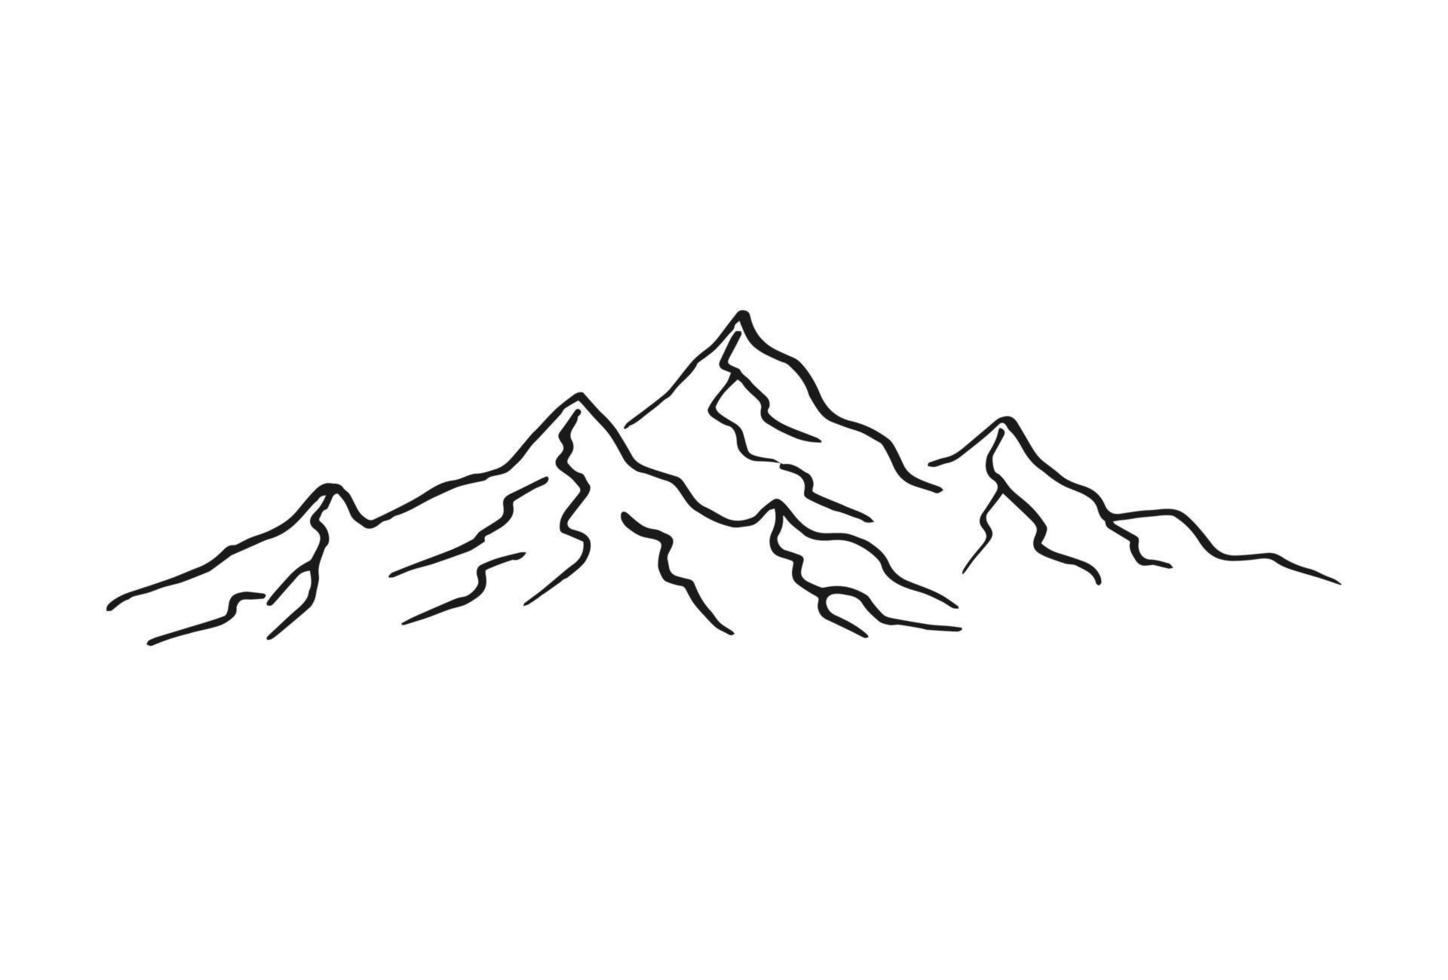 montanhas. picos rochosos desenhados à mão. ilustração vetorial. vetor